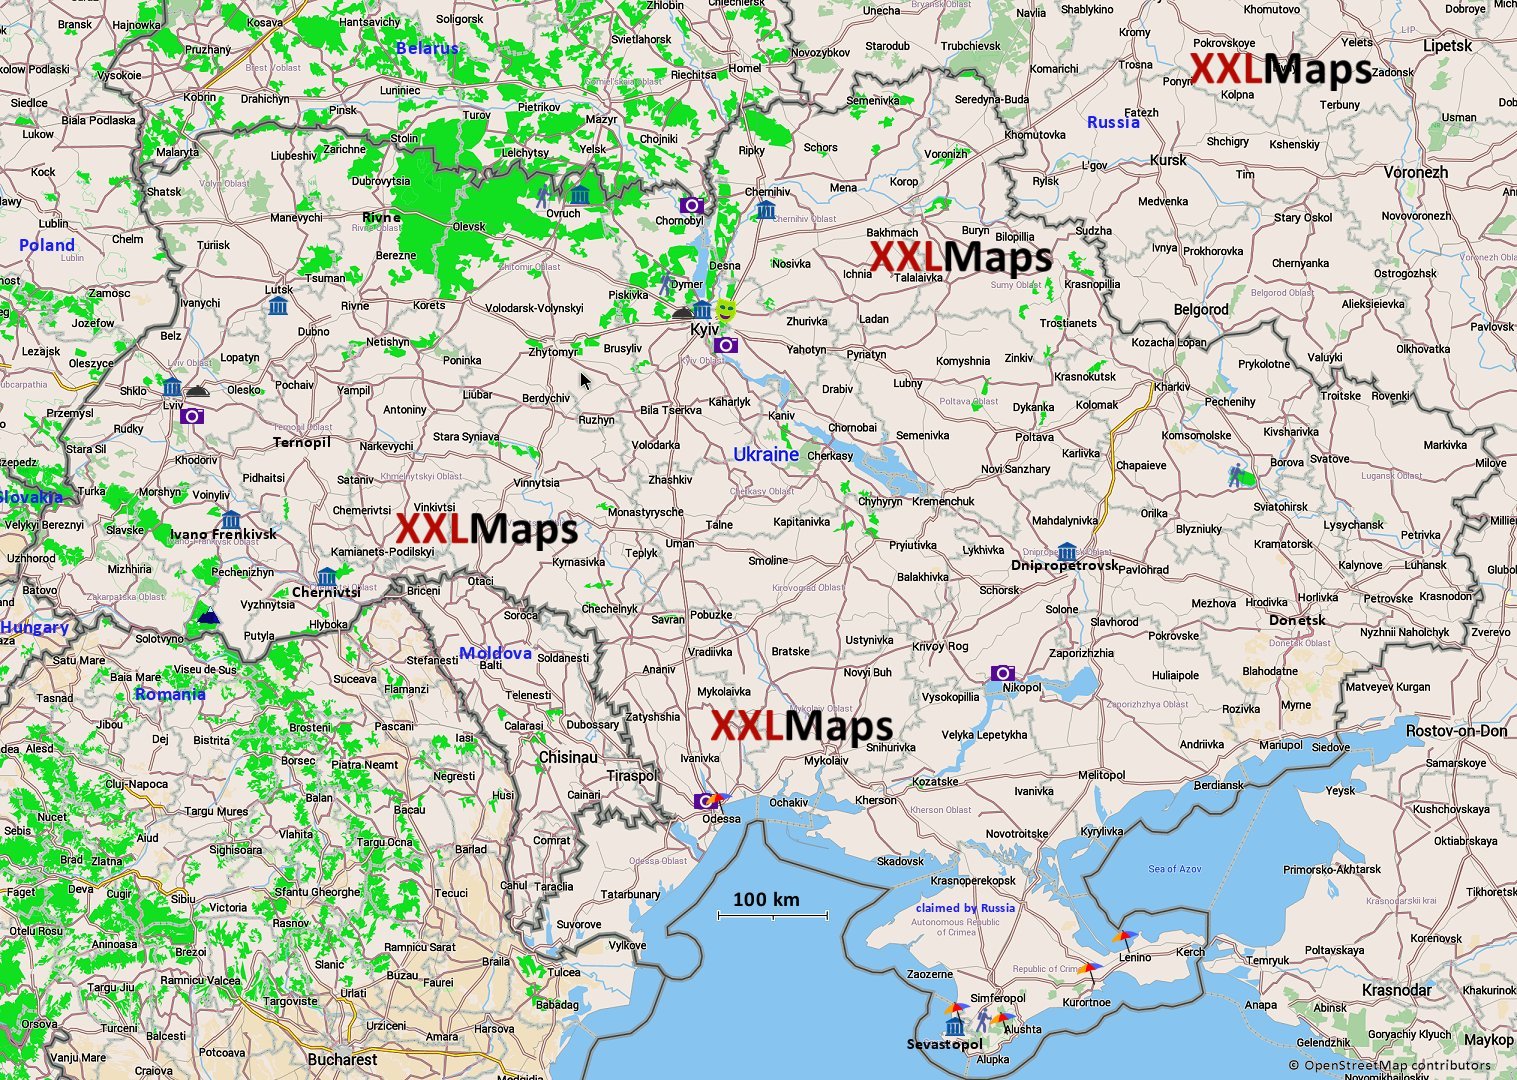 Mappa turistica di Ucraina